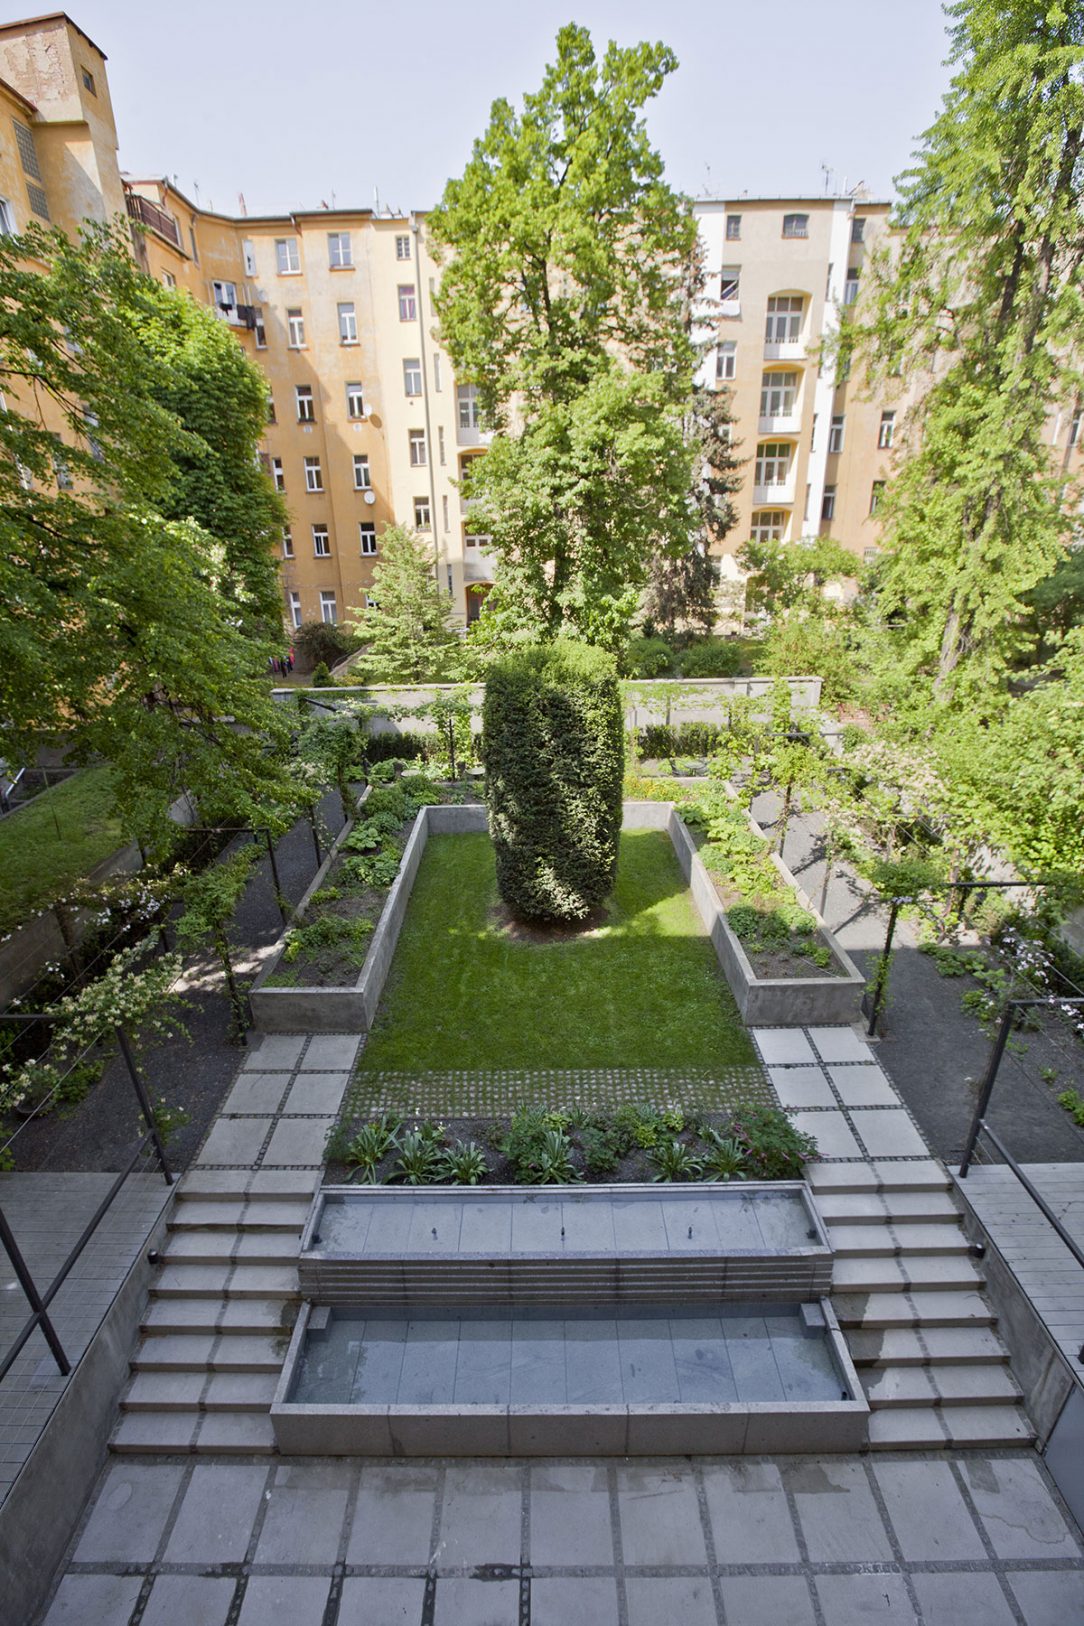 Prostor se odkazuje na symetrii klasicistních zahrad.